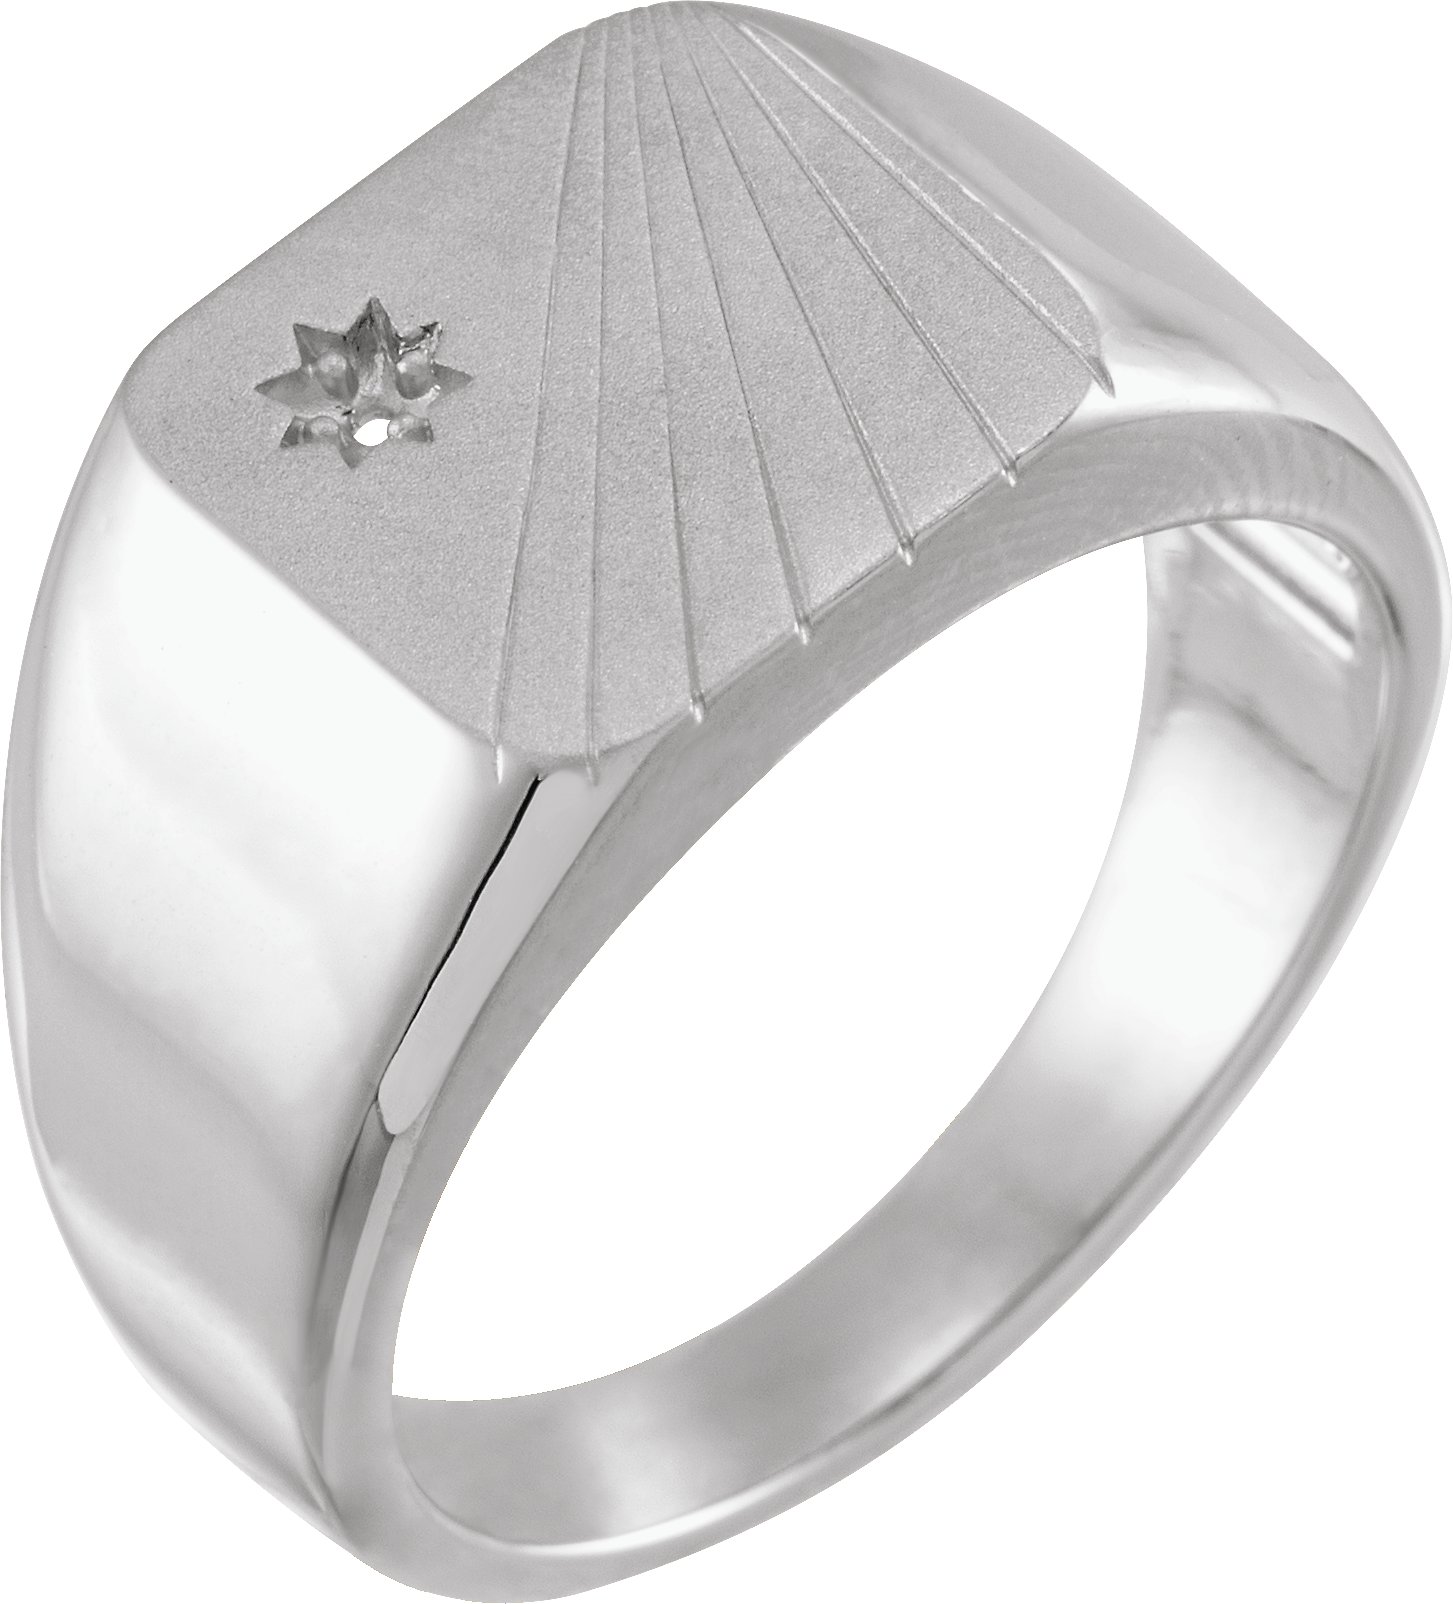 Celestial-Inspired Signet Ring